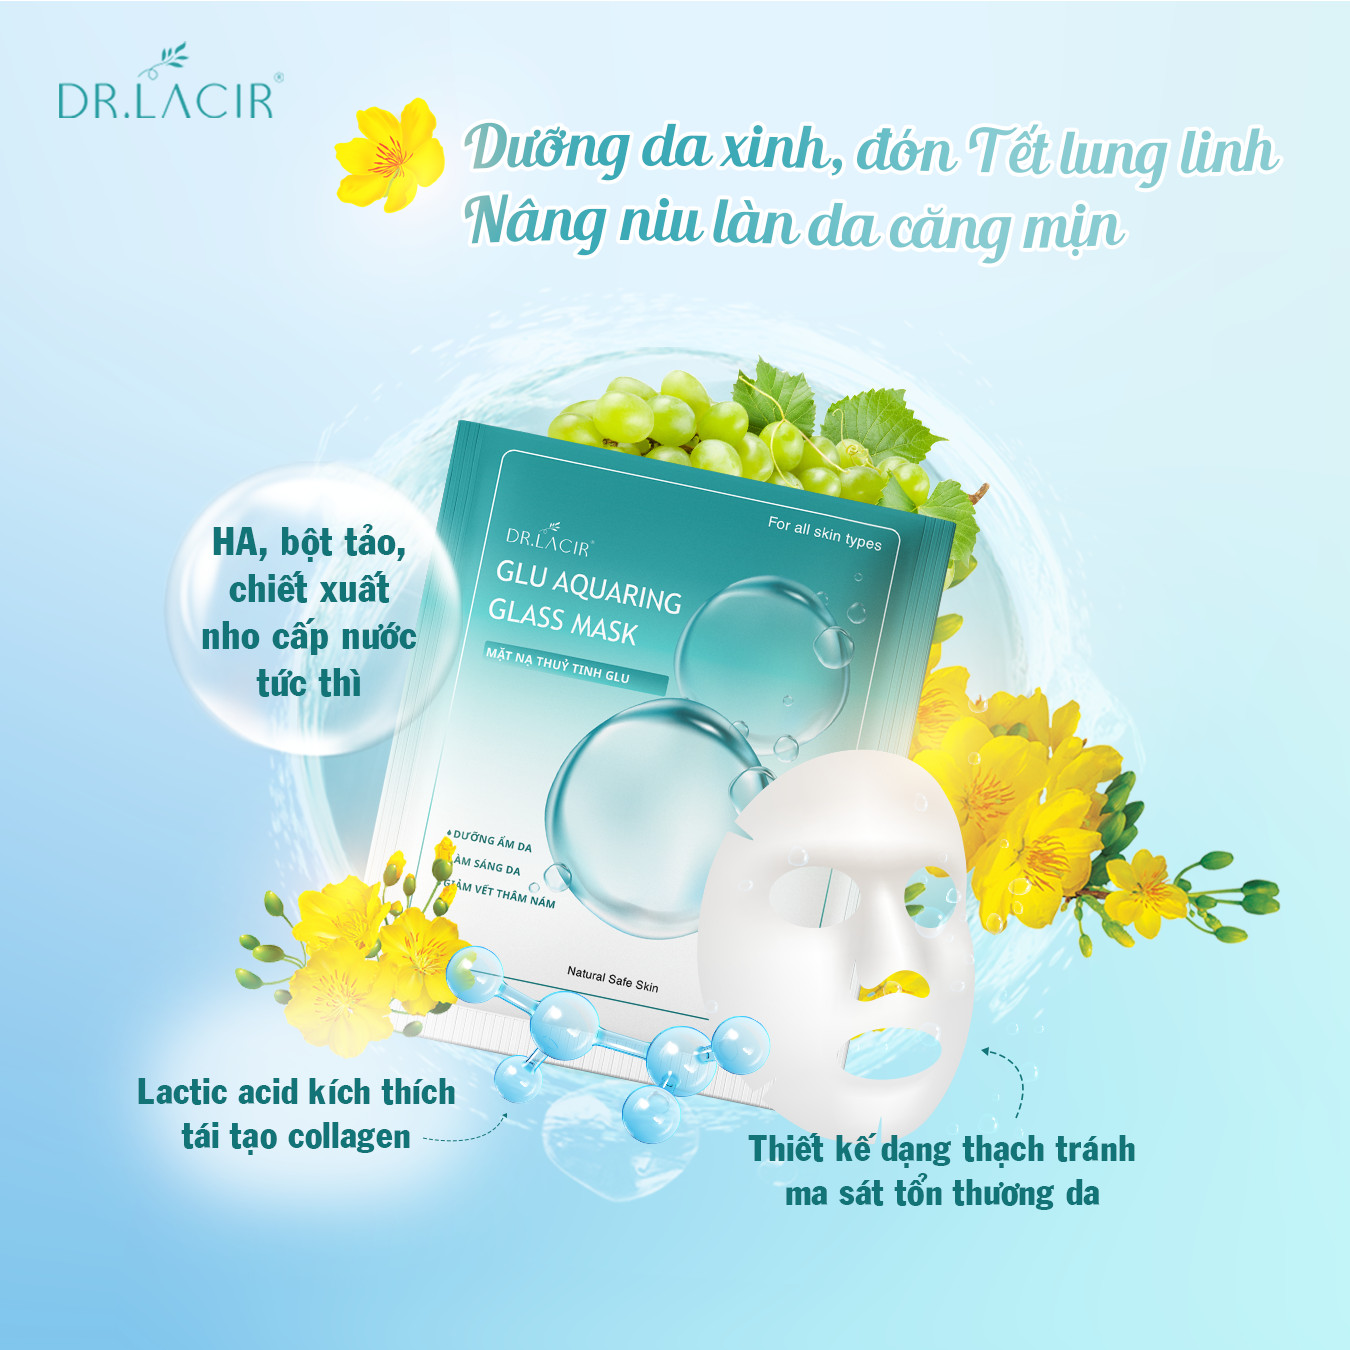 Mặt Nạ Thuỷ Tinh Glutathione Dr Lacir - Glu Aquaring Glass Mask: Dưỡng Ẩm Da, Làm Sáng Da, Giảm Vết Thâm Nám (miếng lẻ)